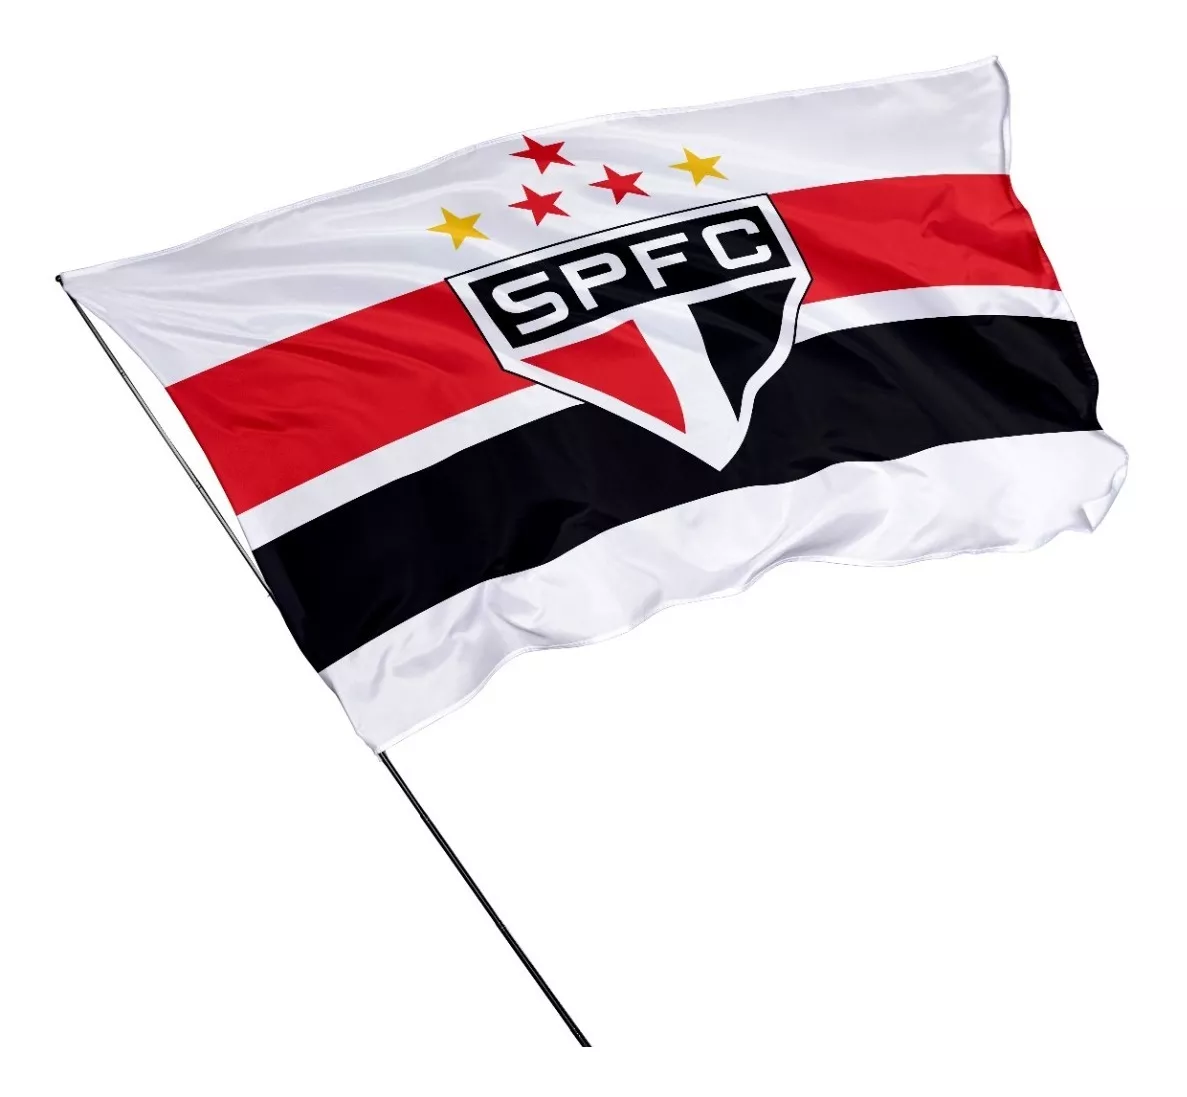 Bandeira Do São Paulo Futebol Clube 1,50m X 1m   -  Sp01